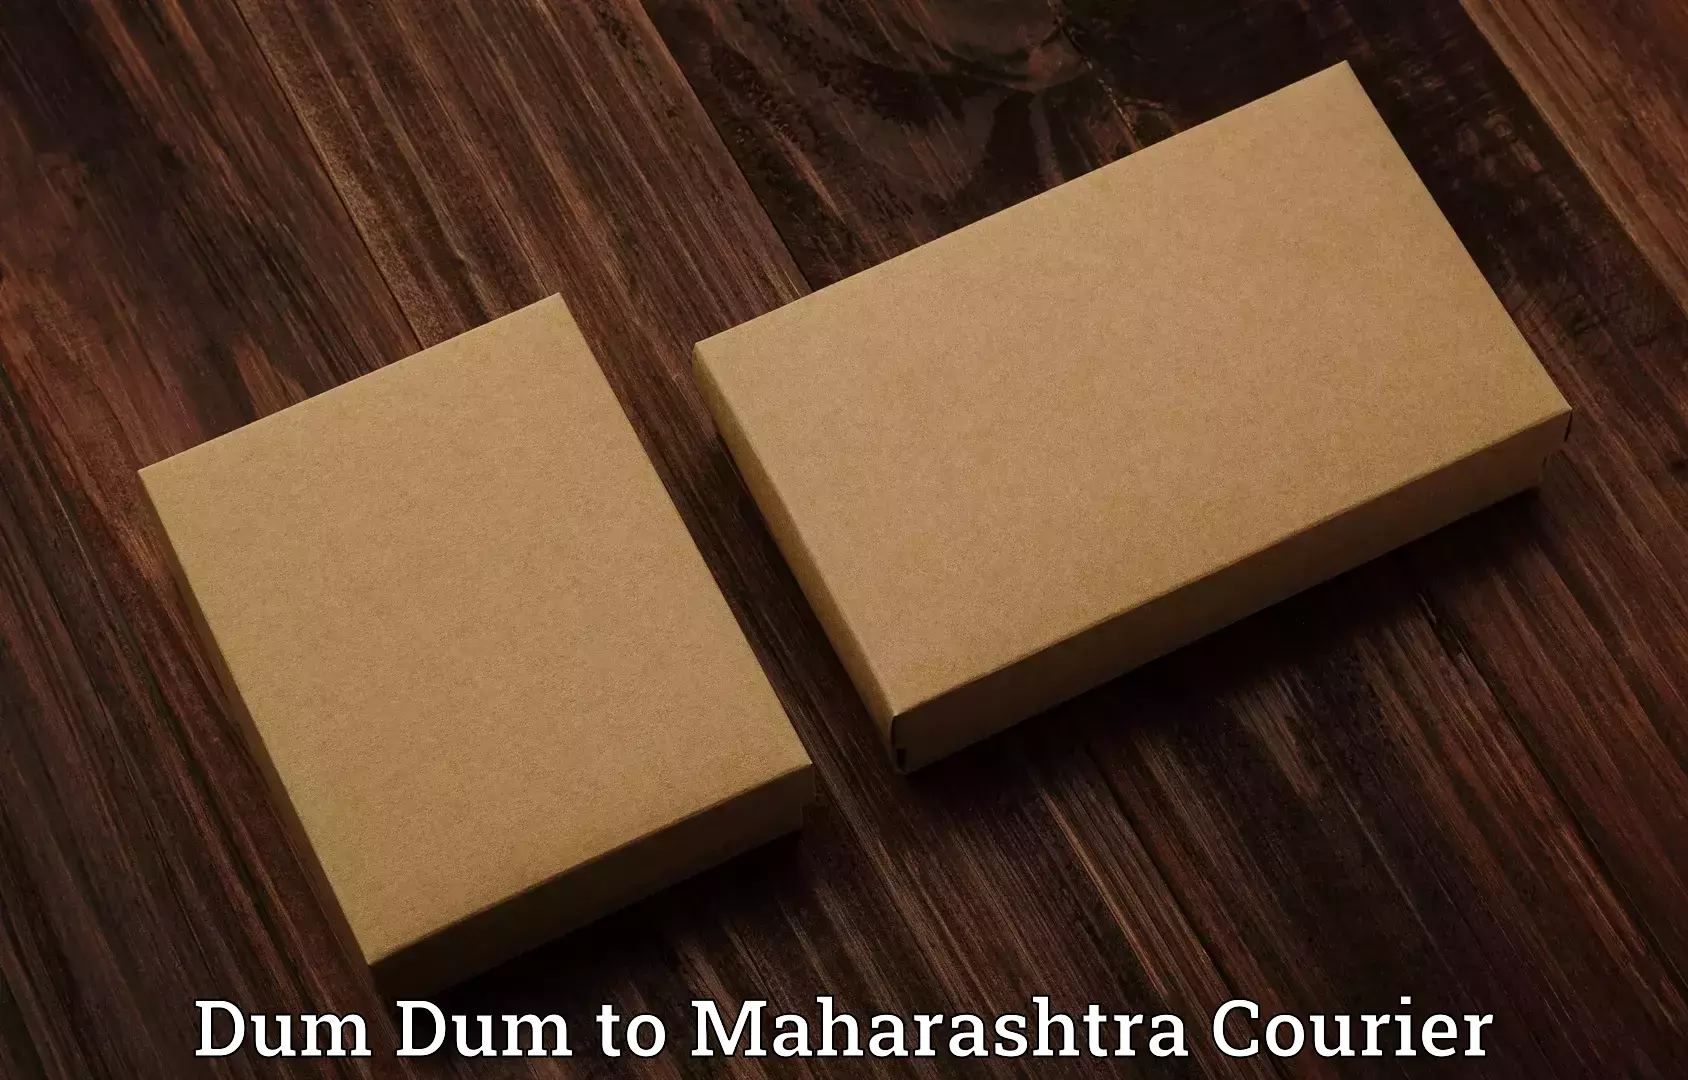 Baggage shipping experts Dum Dum to Maharashtra